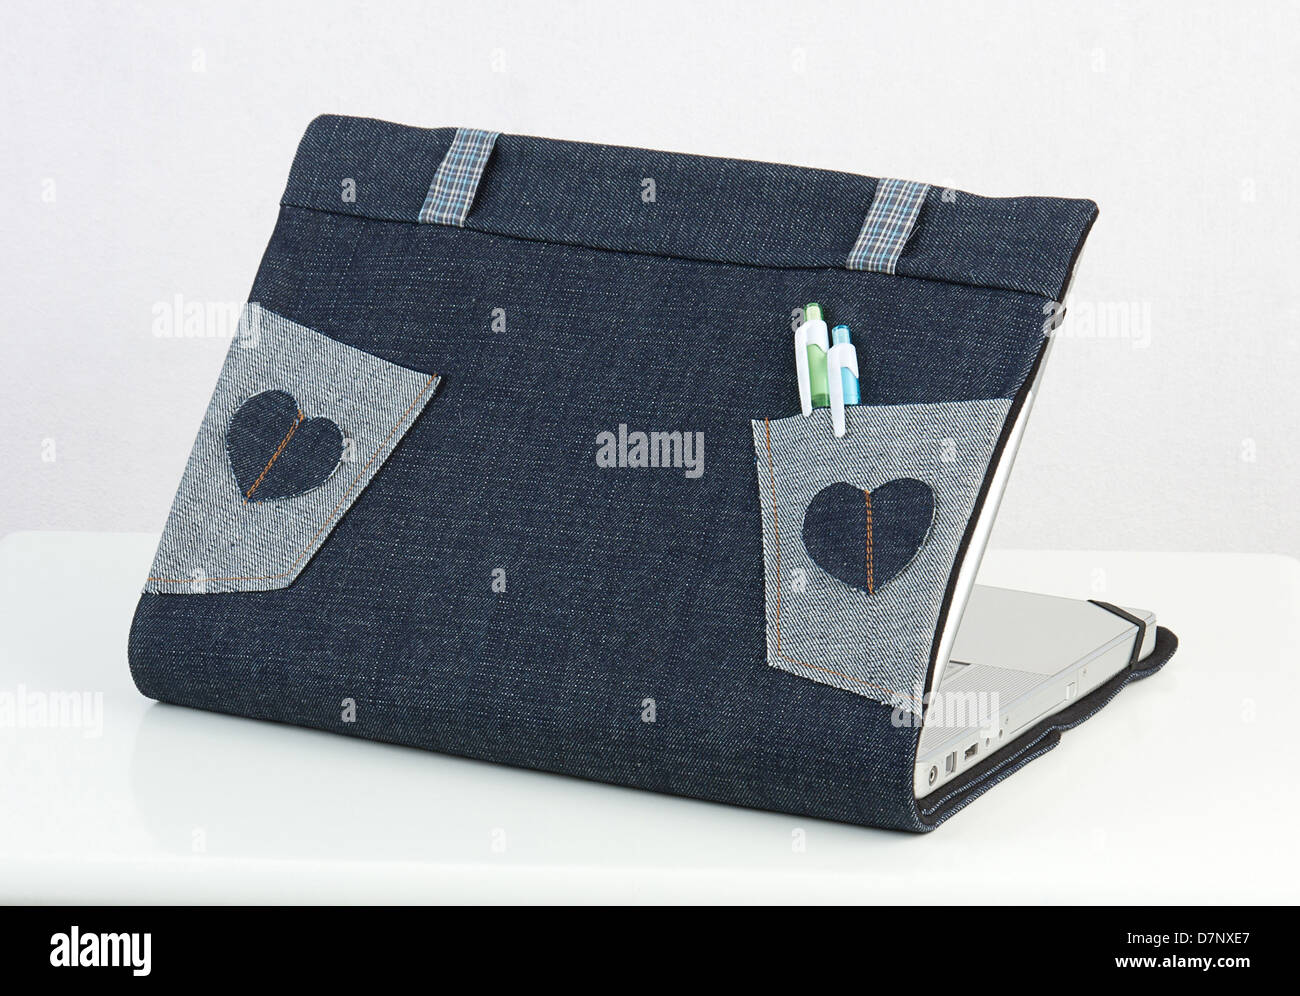 Coffre habillage en tissu pour protéger votre ordinateur portable des rayures ou sale Banque D'Images